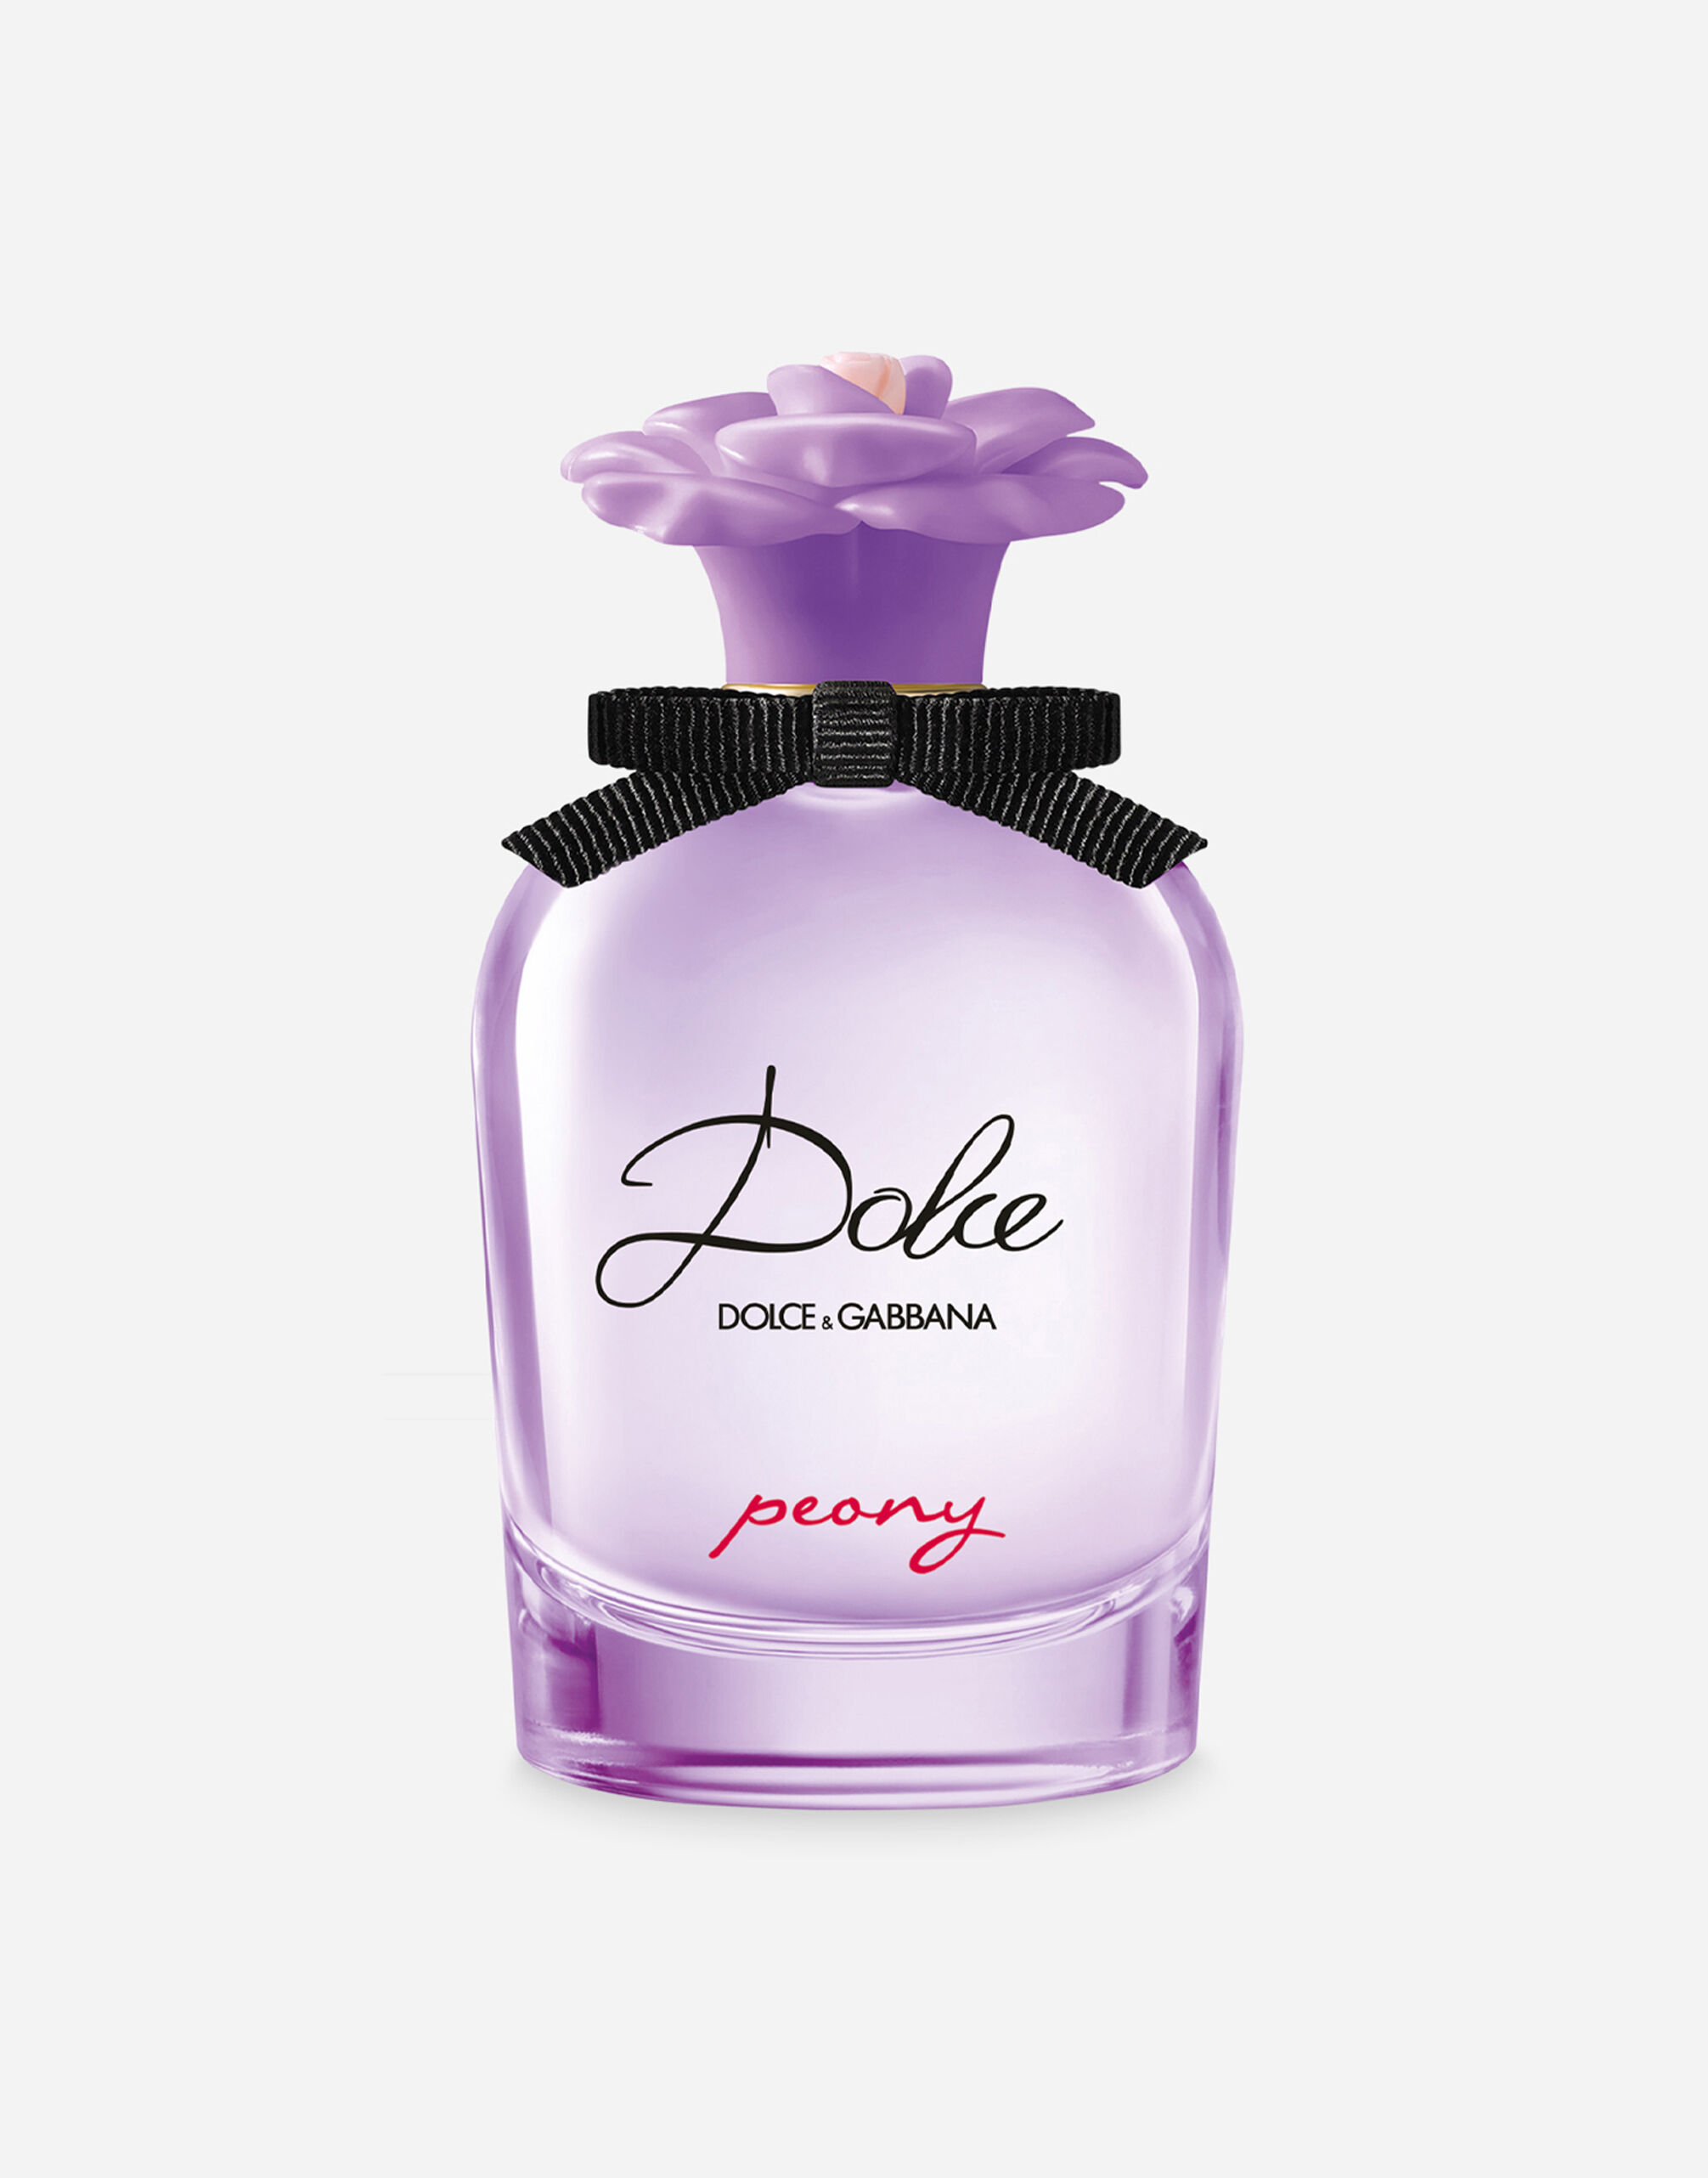 Dolce & Gabbana Dolce Peony Eau de Parfum - VP000WVP000